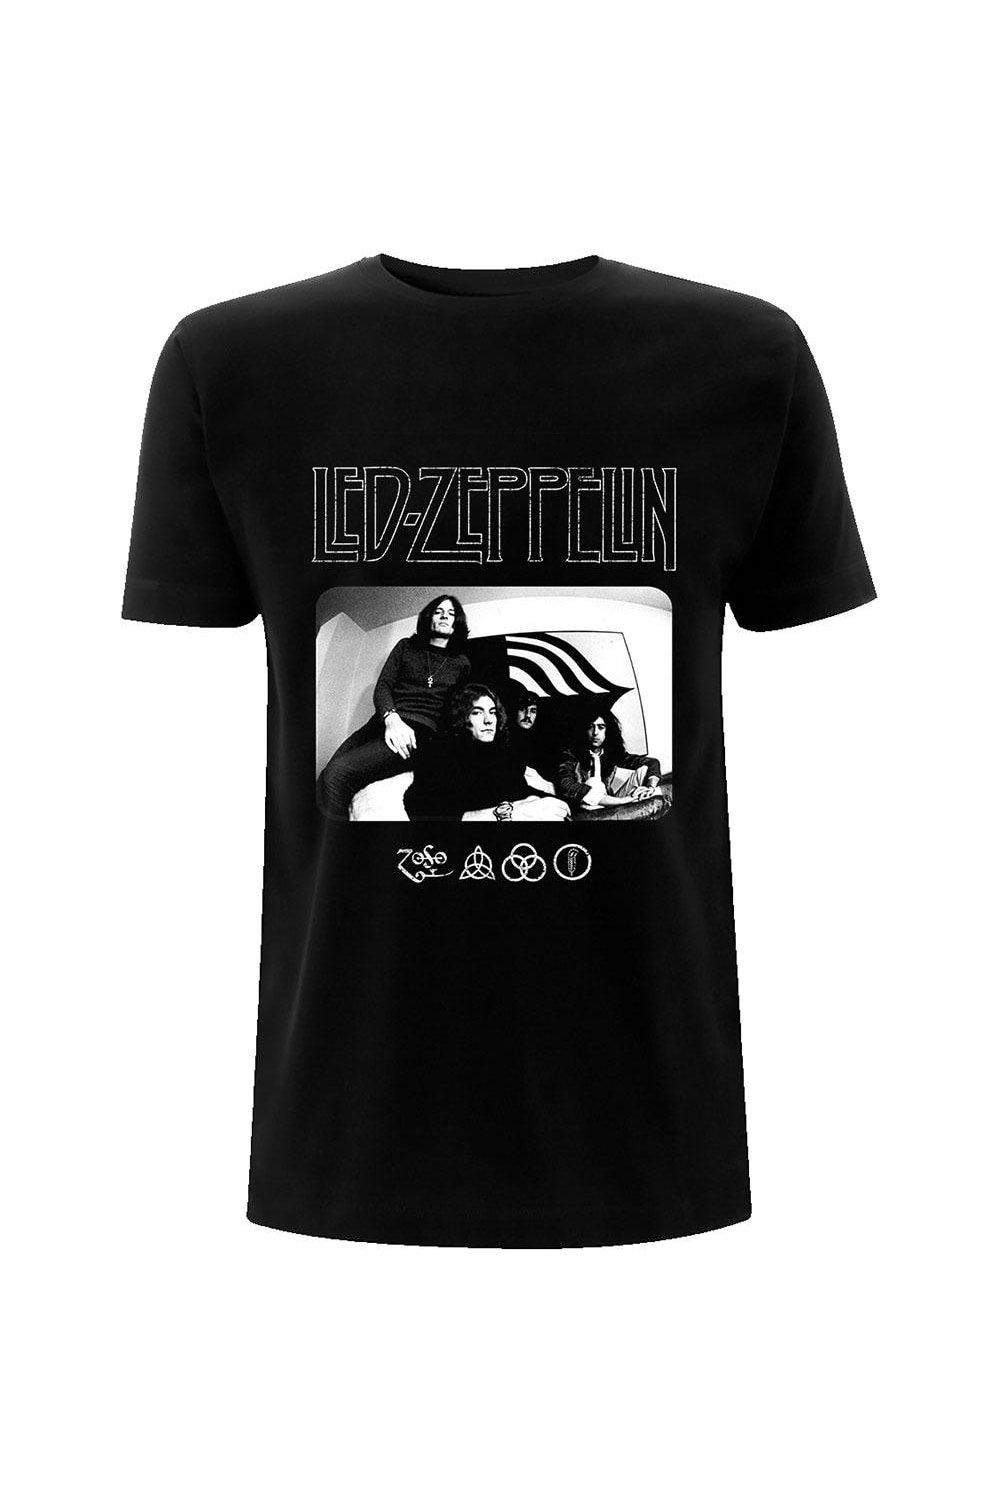 индивидуальный креативный дизайн пользовательский логотип только лазерная фотография без часов Футболка с логотипом и изображением фото Led Zeppelin, черный